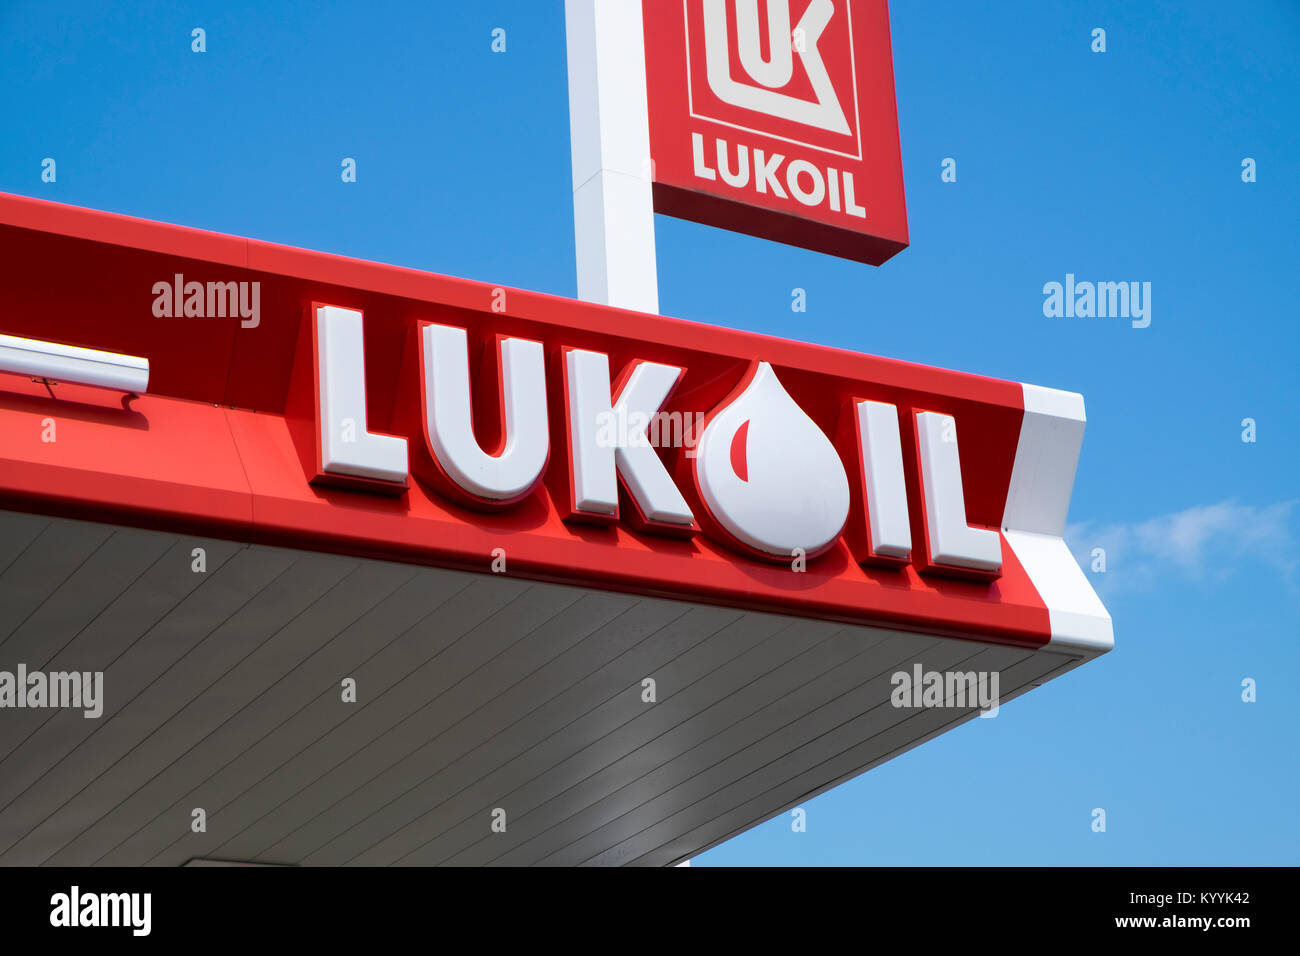 Gigante petrolero ruso Lukoil firmar en una de sus estaciones de servicio en Bulgaria, Europa oriental Foto de stock